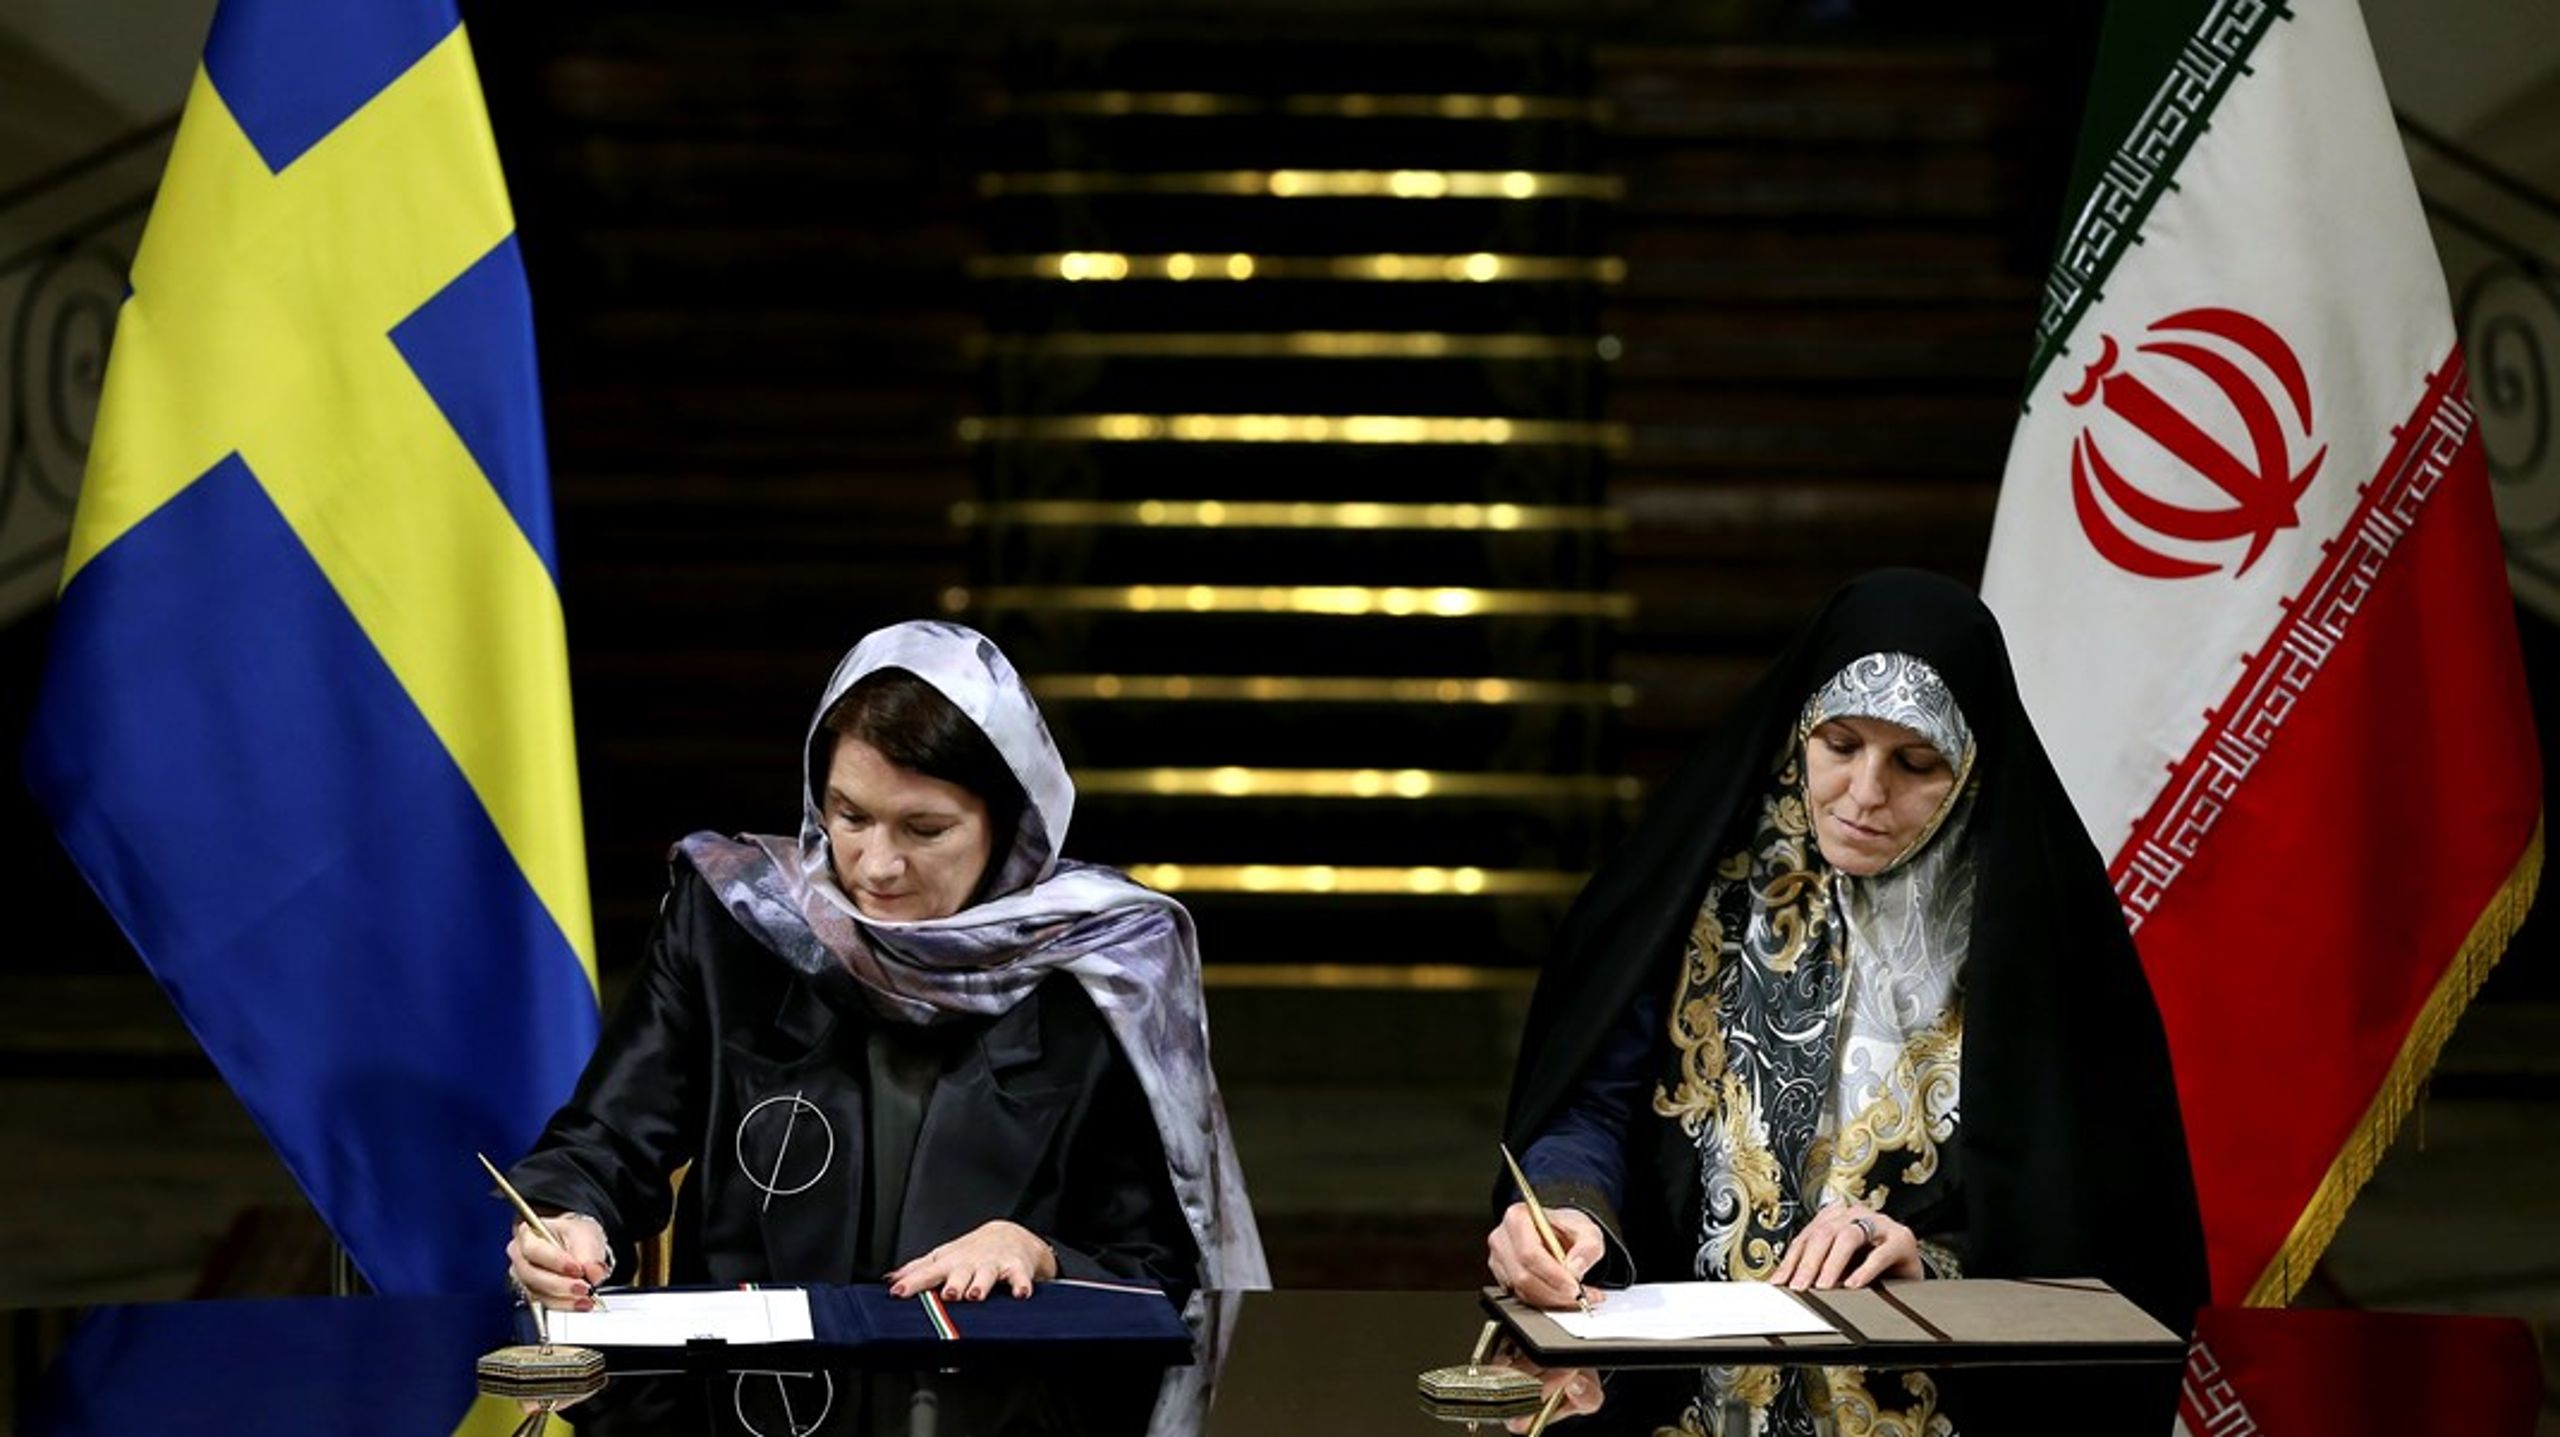 Handel eller feminism? Vid ett besök i Teheran 2017 fick dåvarande handelsminister Ann Linde skarp kritik för att hon bar slöja. Som här tillsammans med Shahindokht Molaverdi, dåvarande minister för kvinno- och familjefrågor.&nbsp;<br>